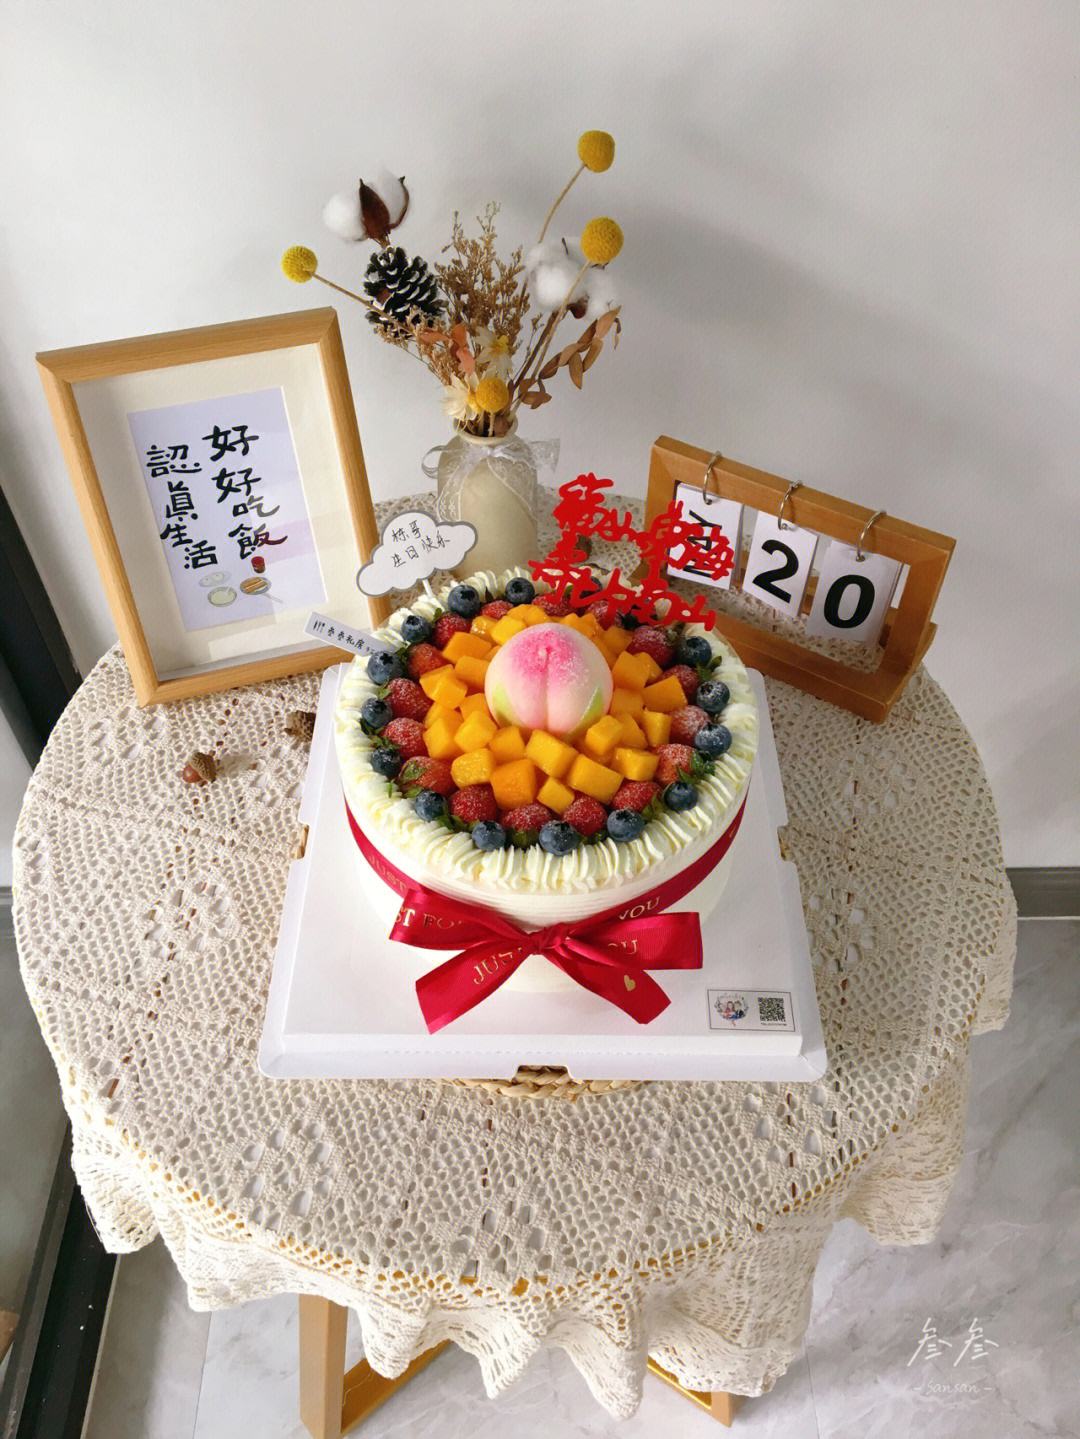 水果蛋糕祝寿蛋糕